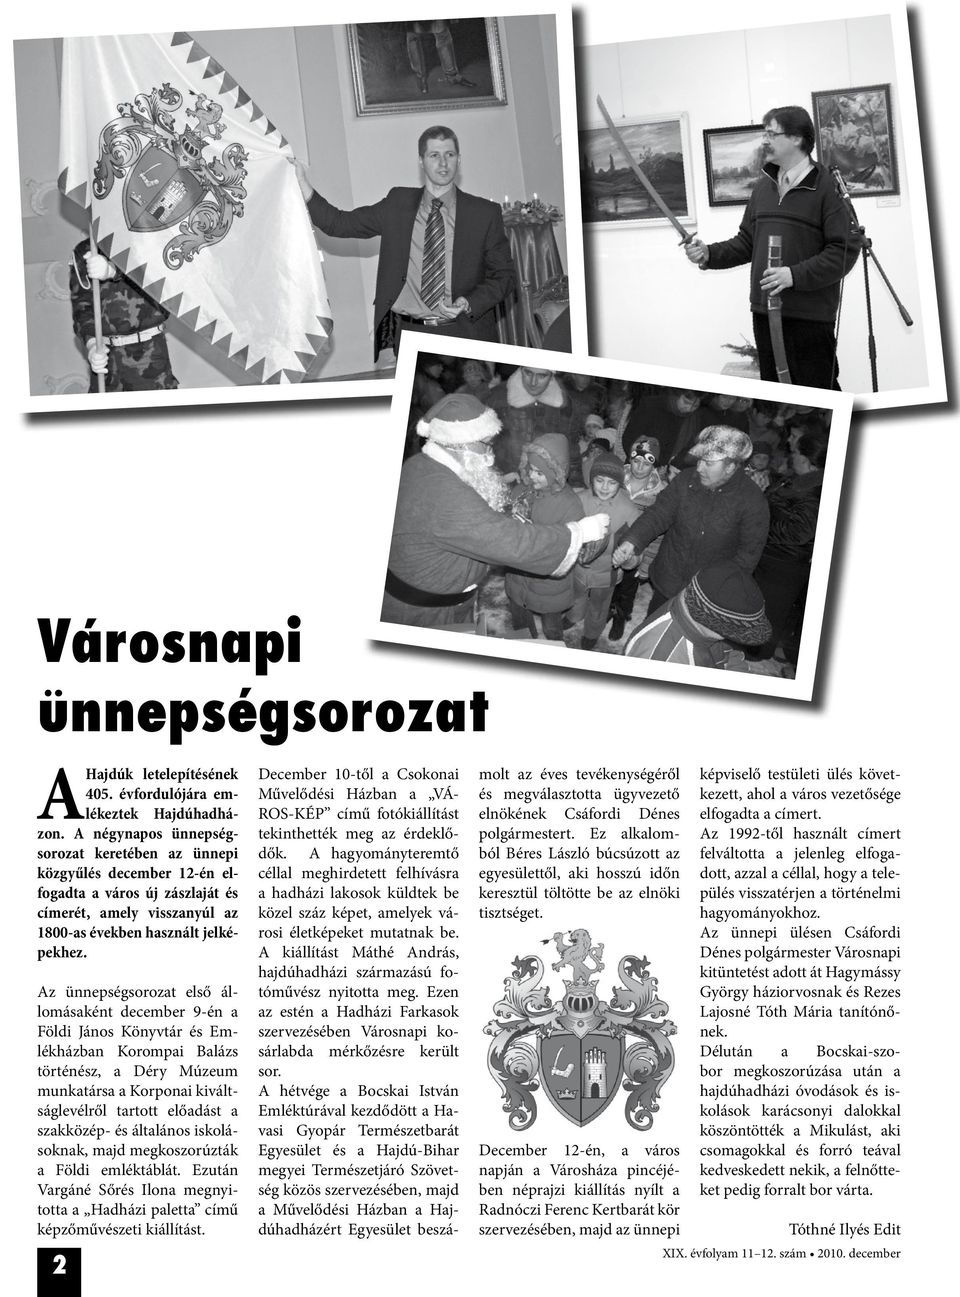 Az ünnepségsorozat első állomásaként december 9-én a Földi János Könyvtár és Emlékházban Korompai Balázs történész, a Déry Múzeum munkatársa a Korponai kiváltságlevélről tartott előadást a szakközép-